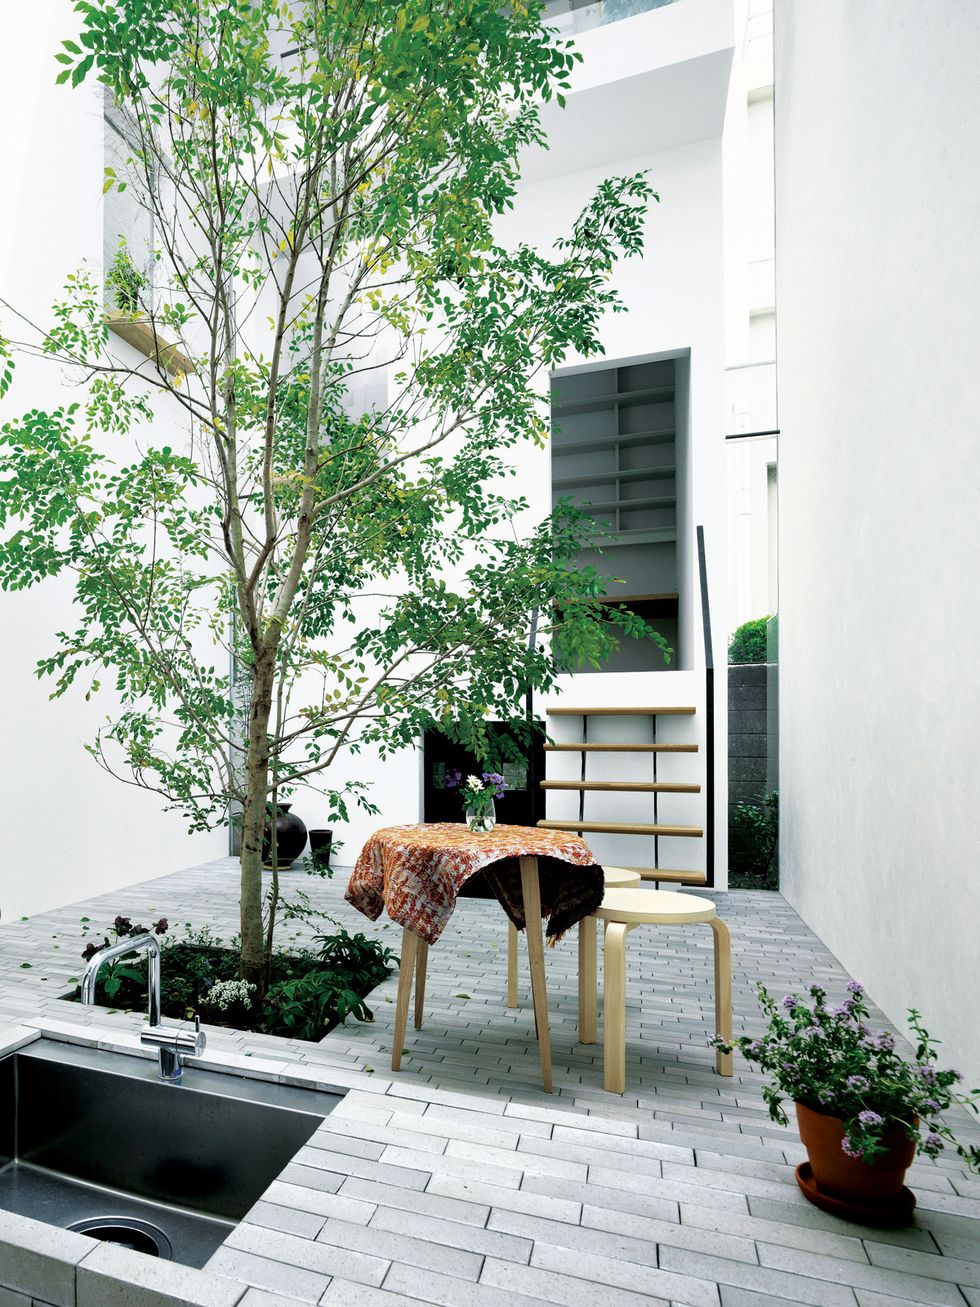 Branch, Flowerpot, Twig, House, Home, Outdoor furniture, Outdoor table, Houseplant, Interior design, Door, 